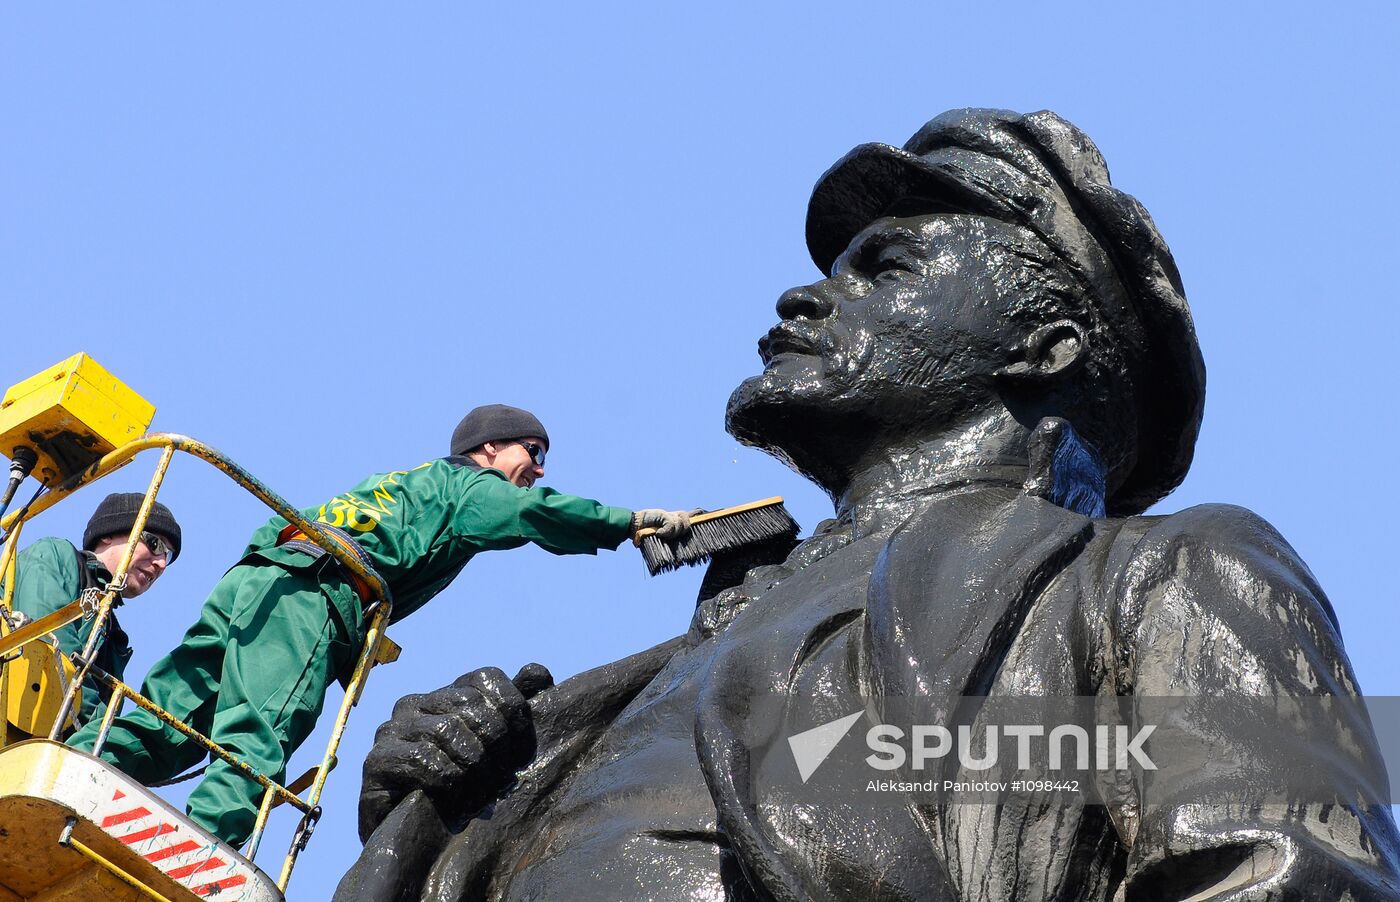 Cleaning monument to Vladimir Lenin, Krasnoyarsk